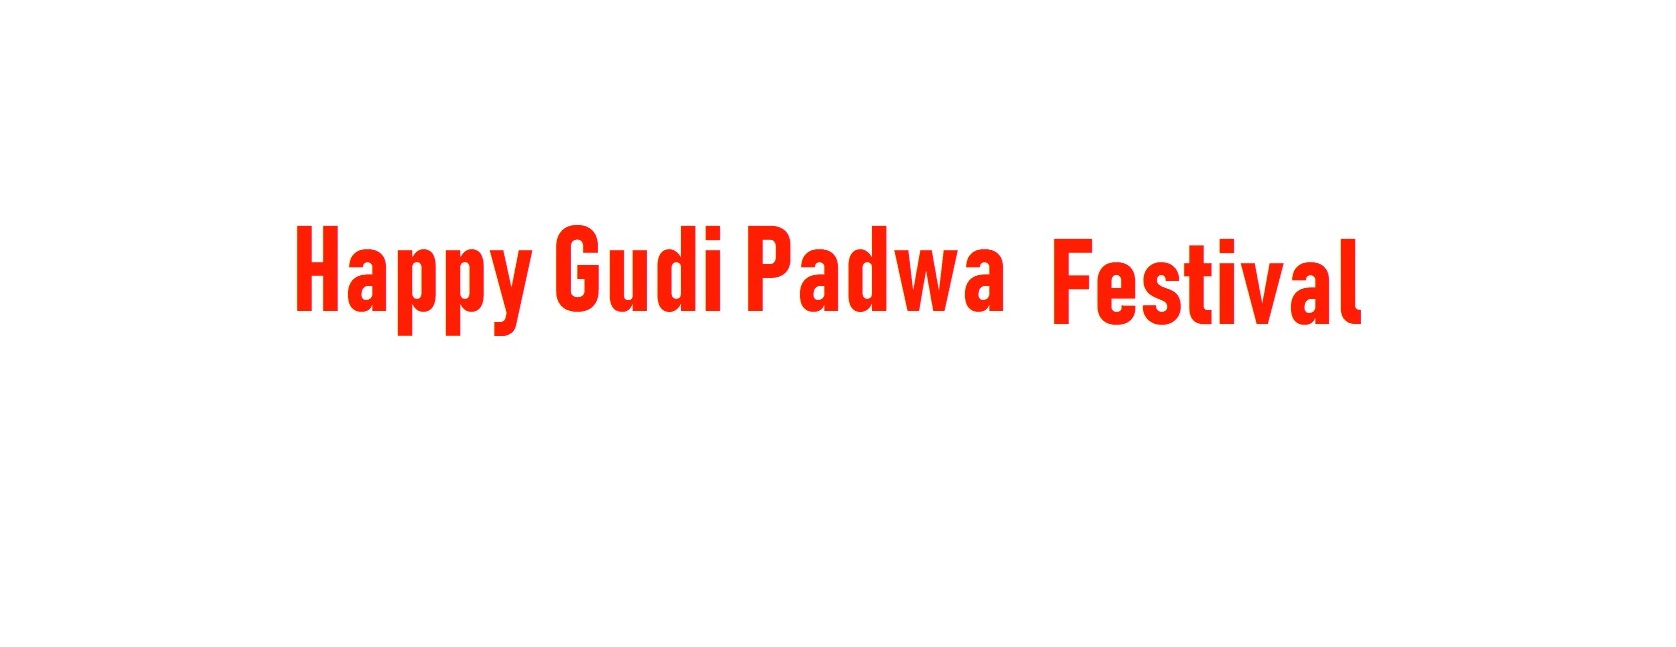 Gudi Padwa Festival Tour